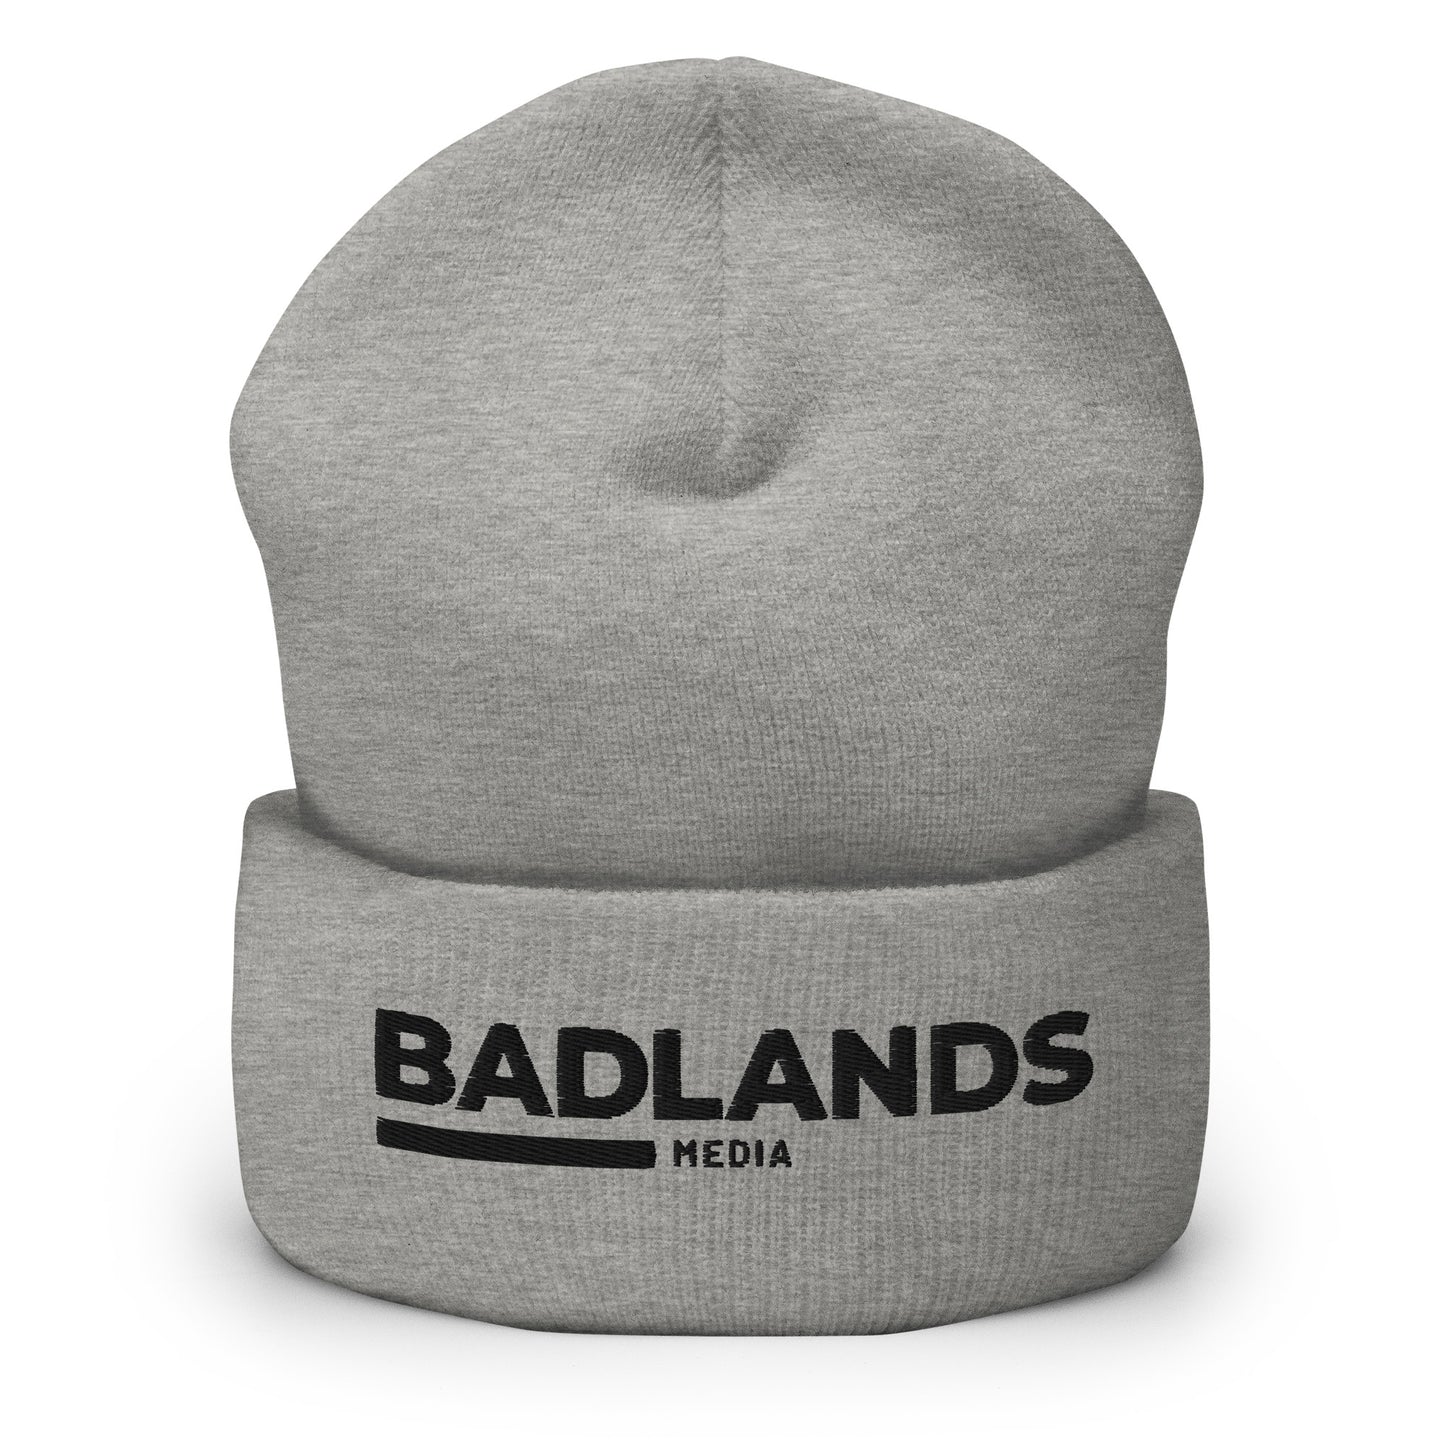 Badlands Cuffed Beanie with black logo